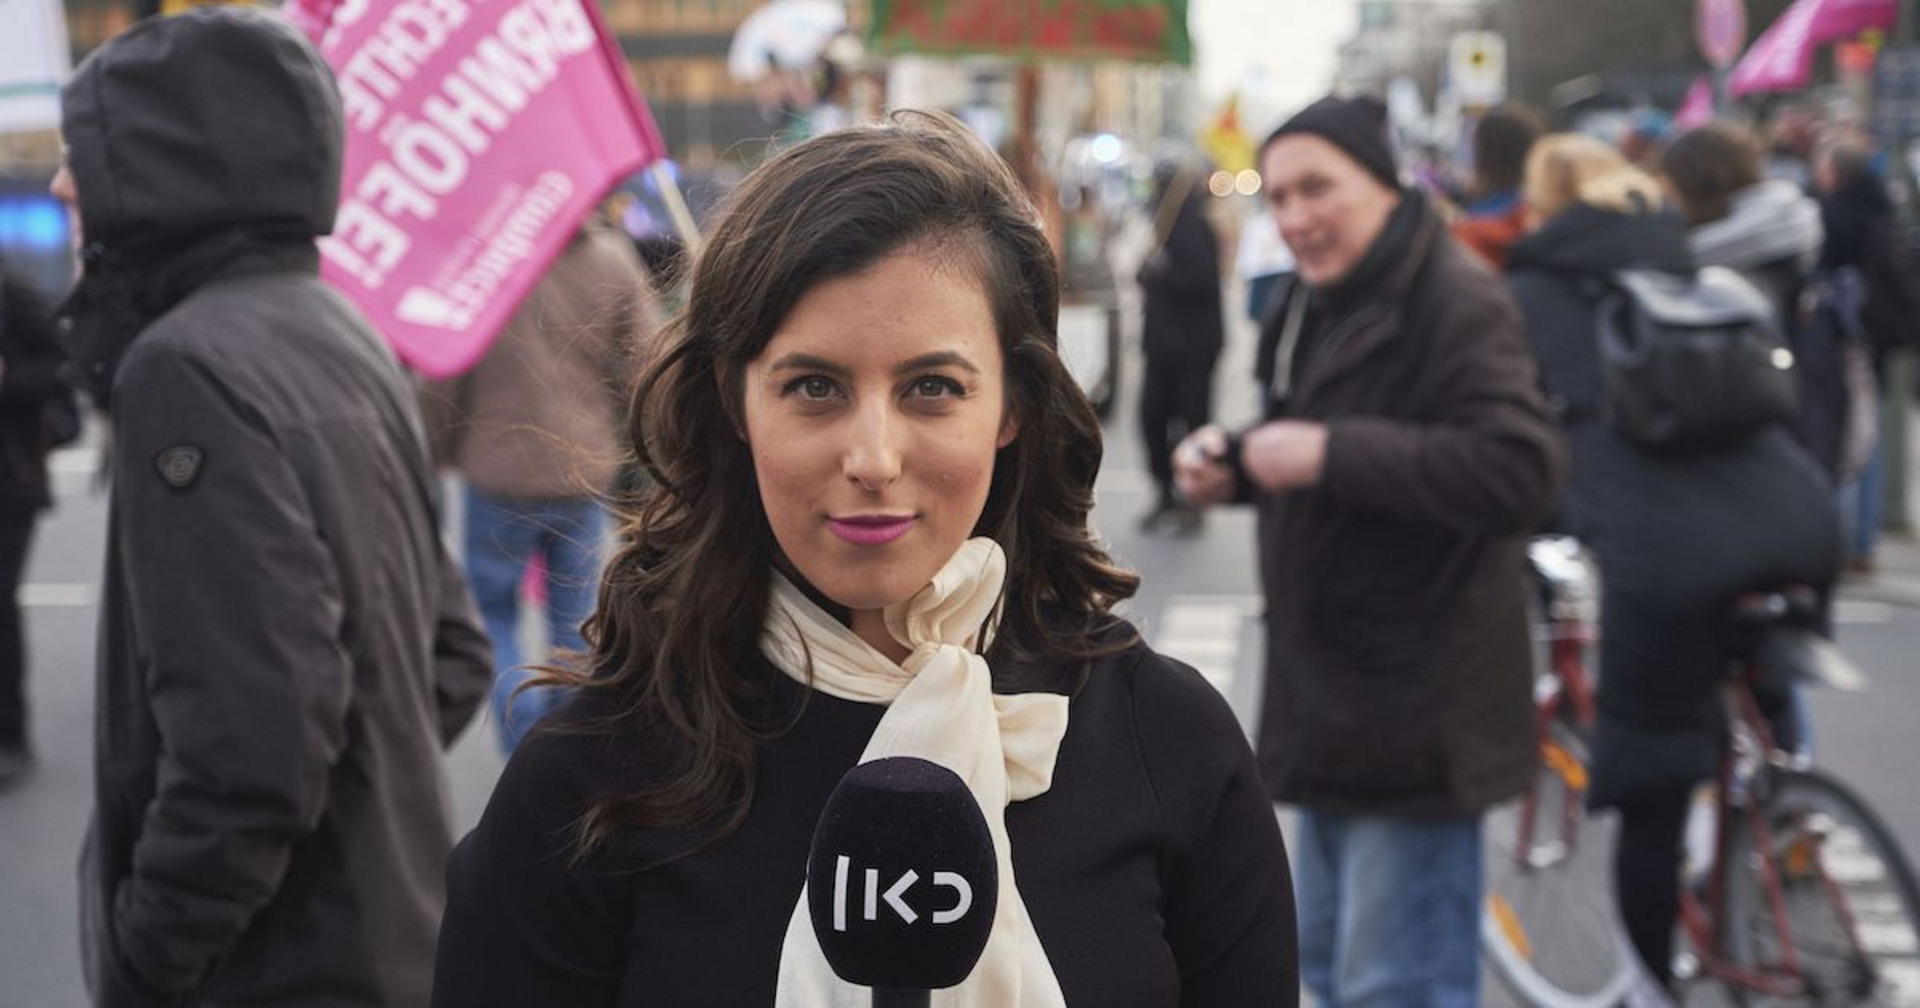 Eine Frau mit einem Mikrofon in der Hand steht mitten in einer Demonstration und schaut in die Kamera.